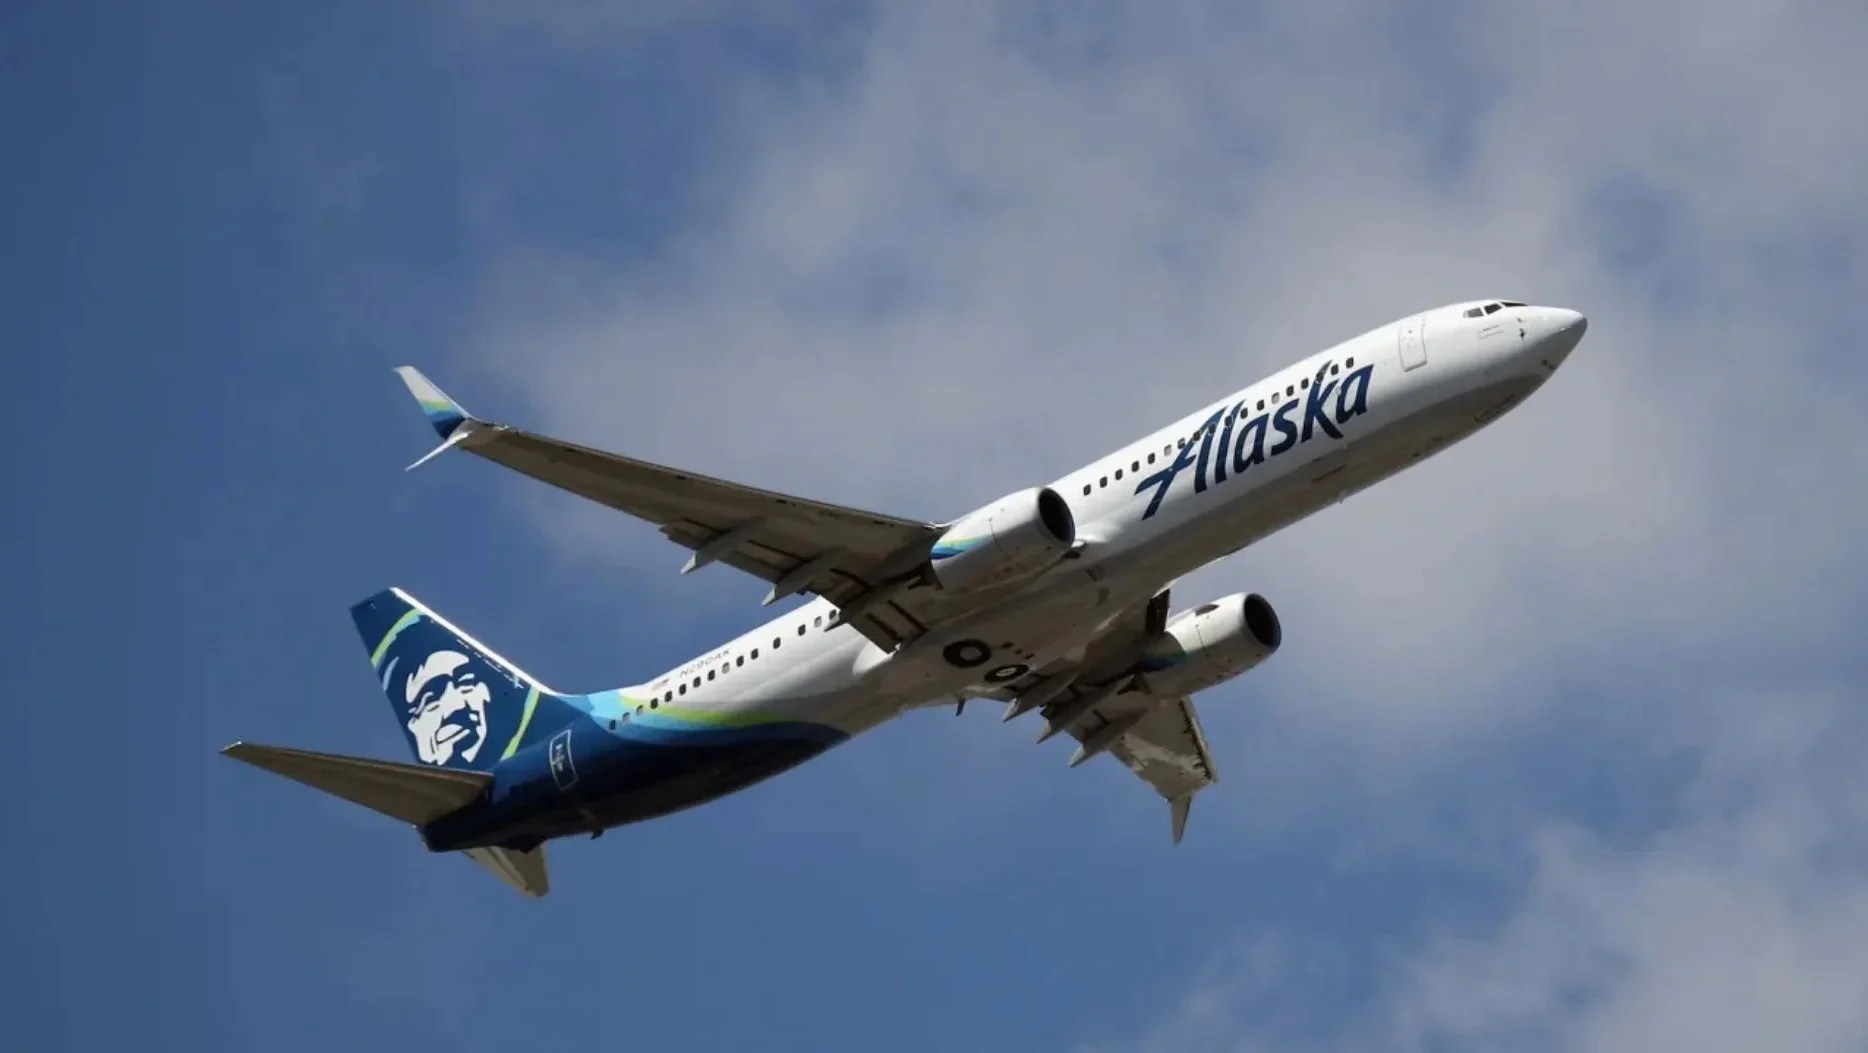 Alaska Airlines pilot says he took ‘magic mushrooms’ before incident